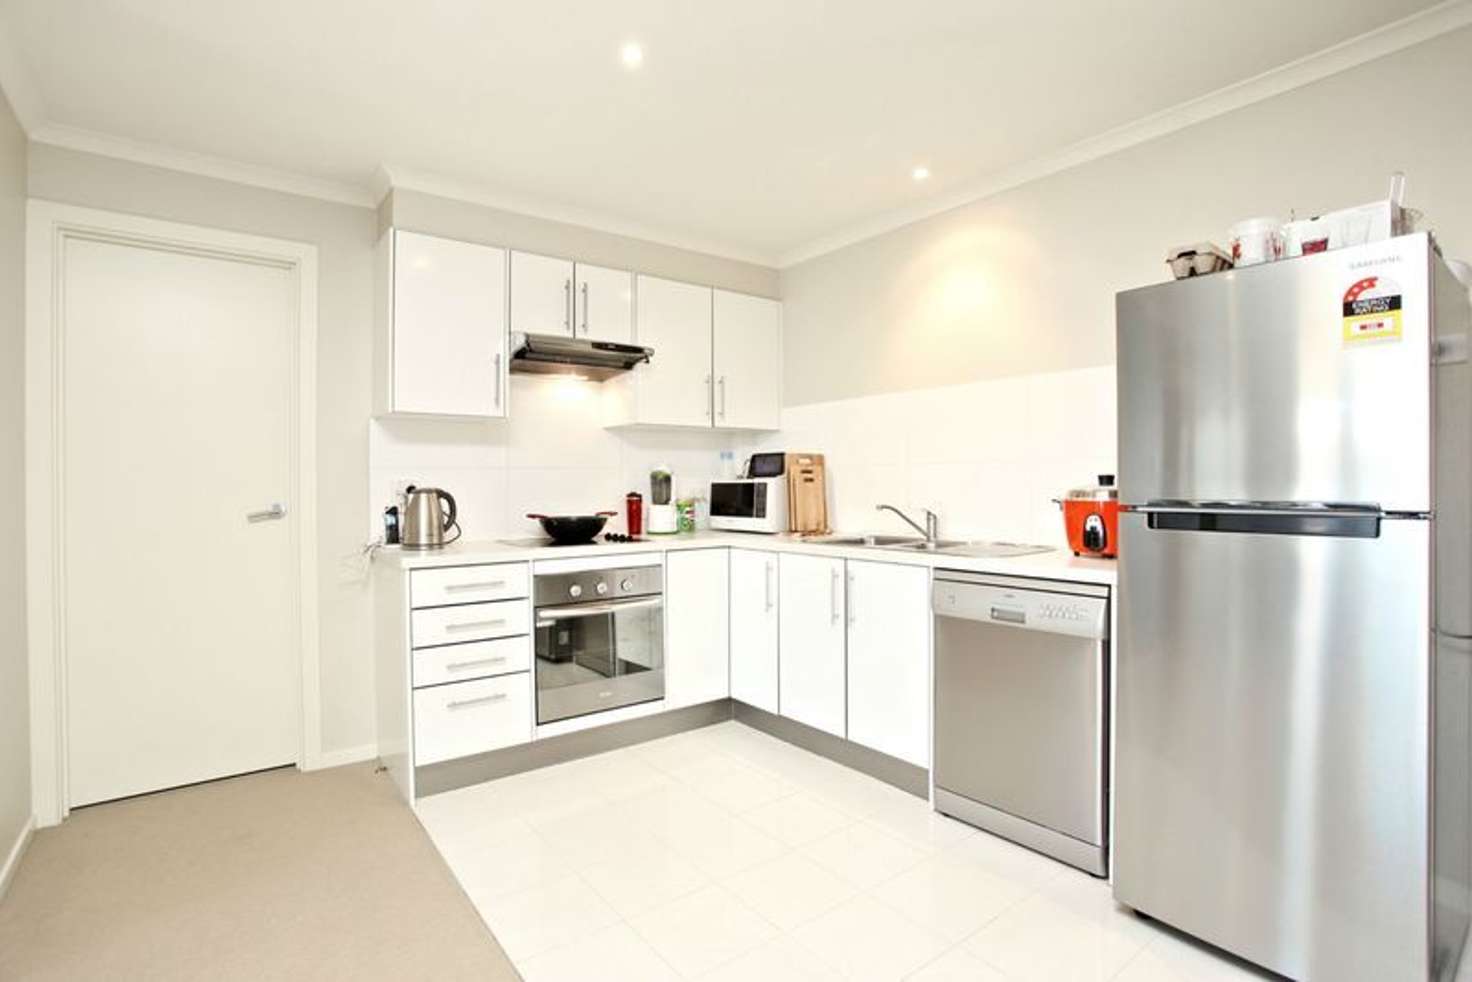 Main view of Homely apartment listing, 32, 5-19 Goodall Parade, Mawson Lakes SA 5095